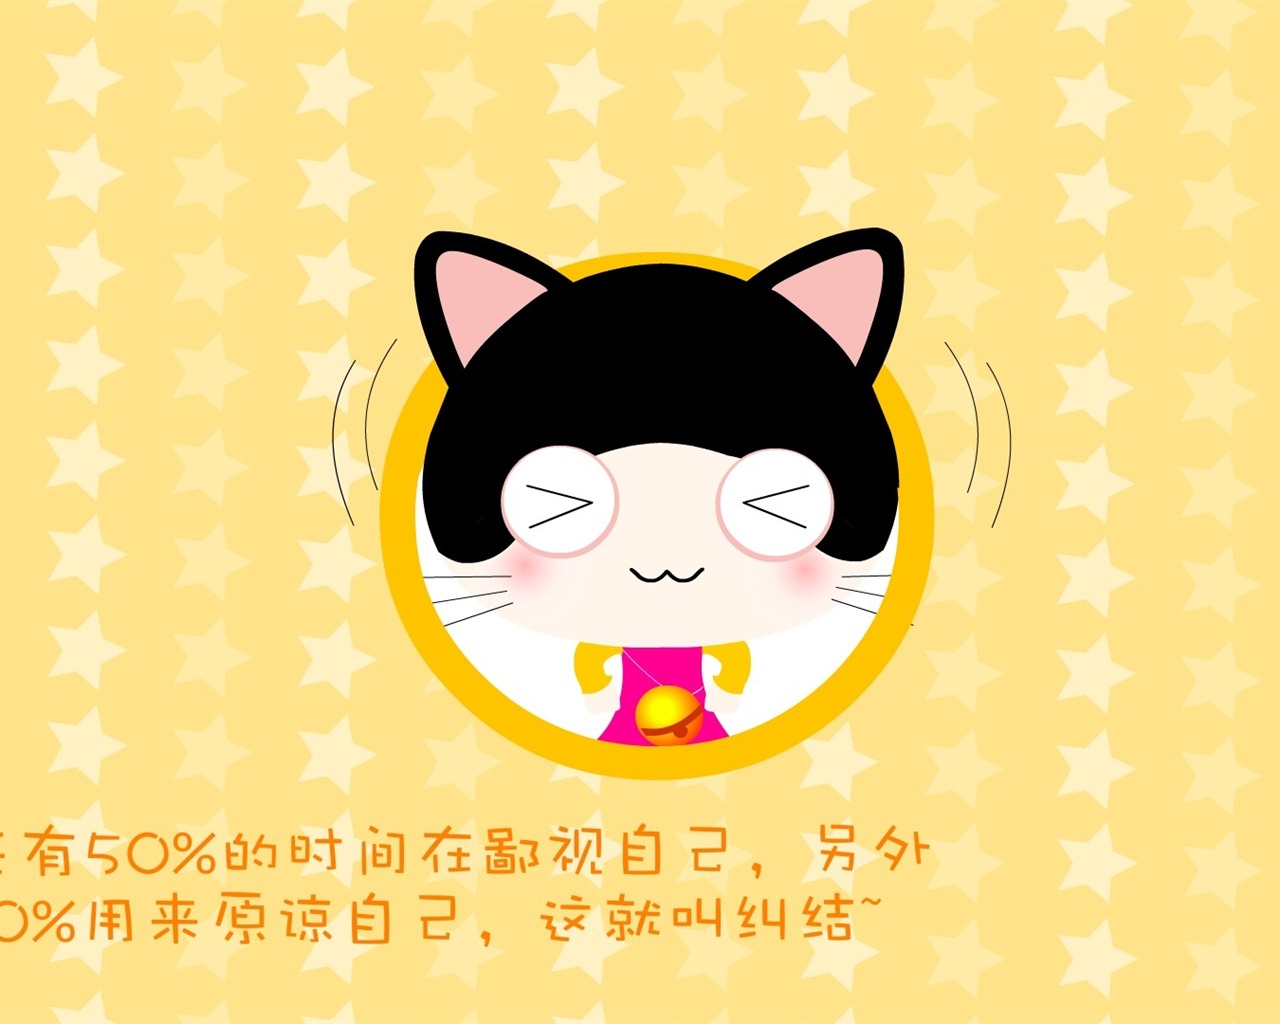 猫咪宝贝 卡通壁纸(四)19 - 1280x1024